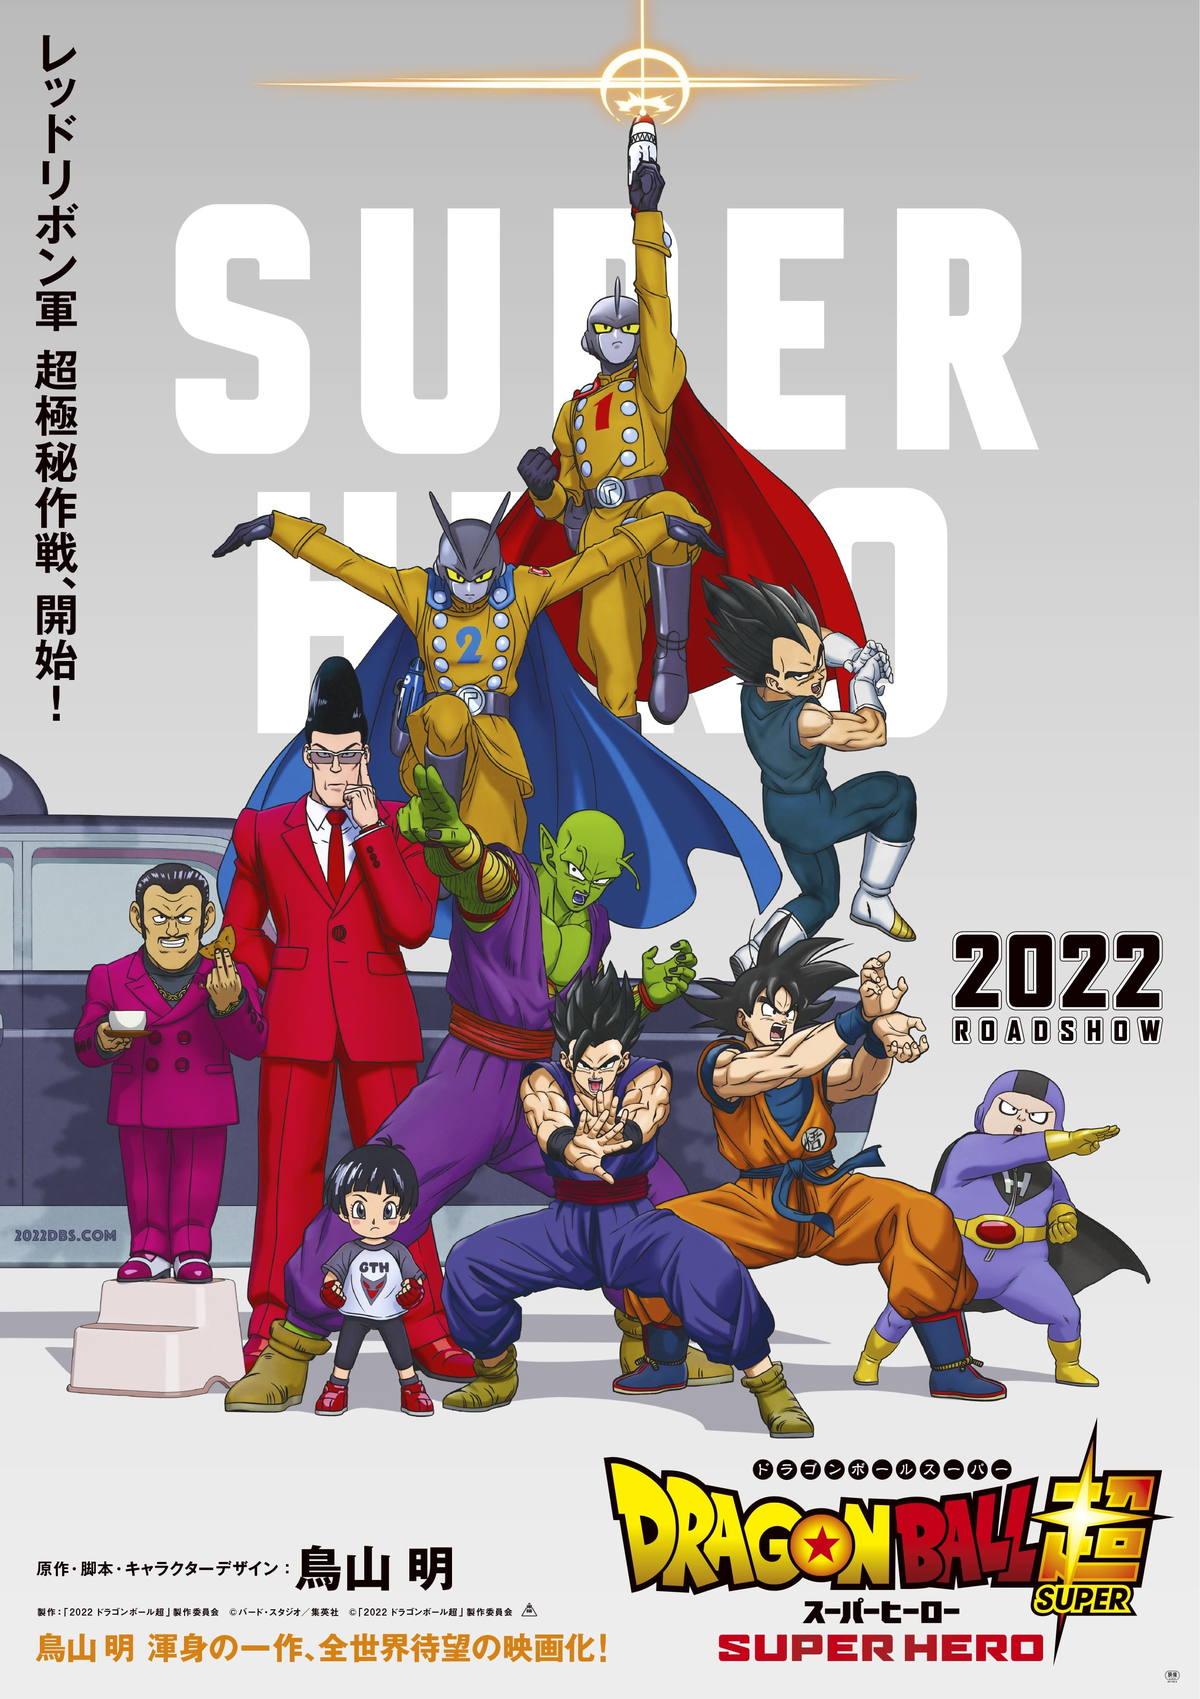 Póster promocional de la película Dragon Ball Super: Super Hero en Japón